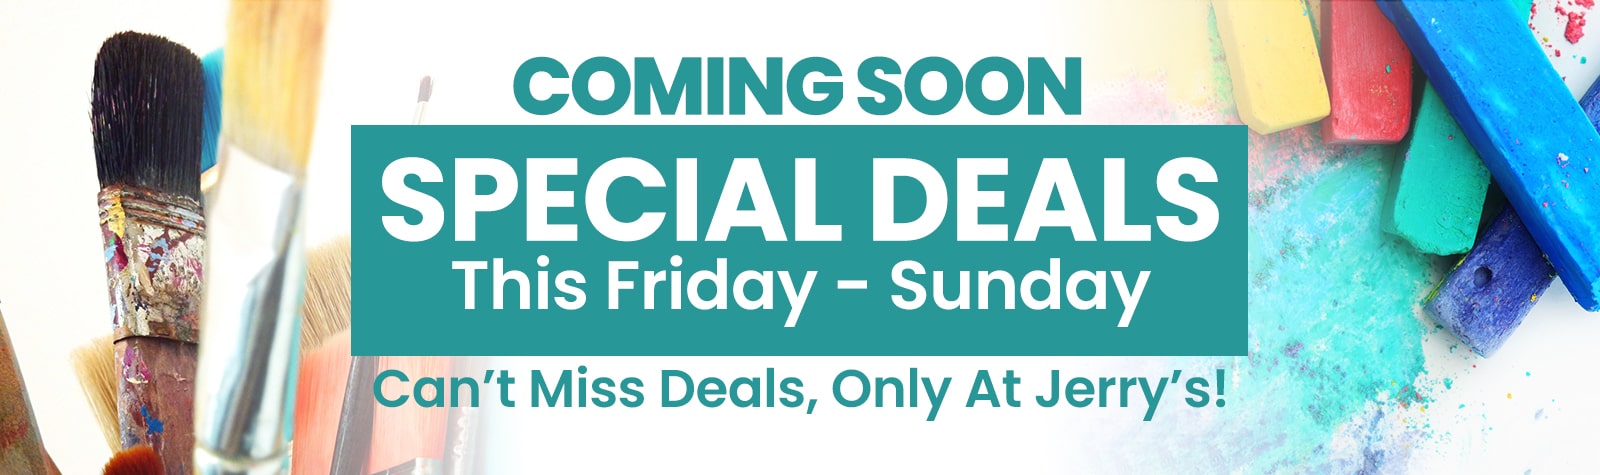 Special Weekend Sale Coming Soon!